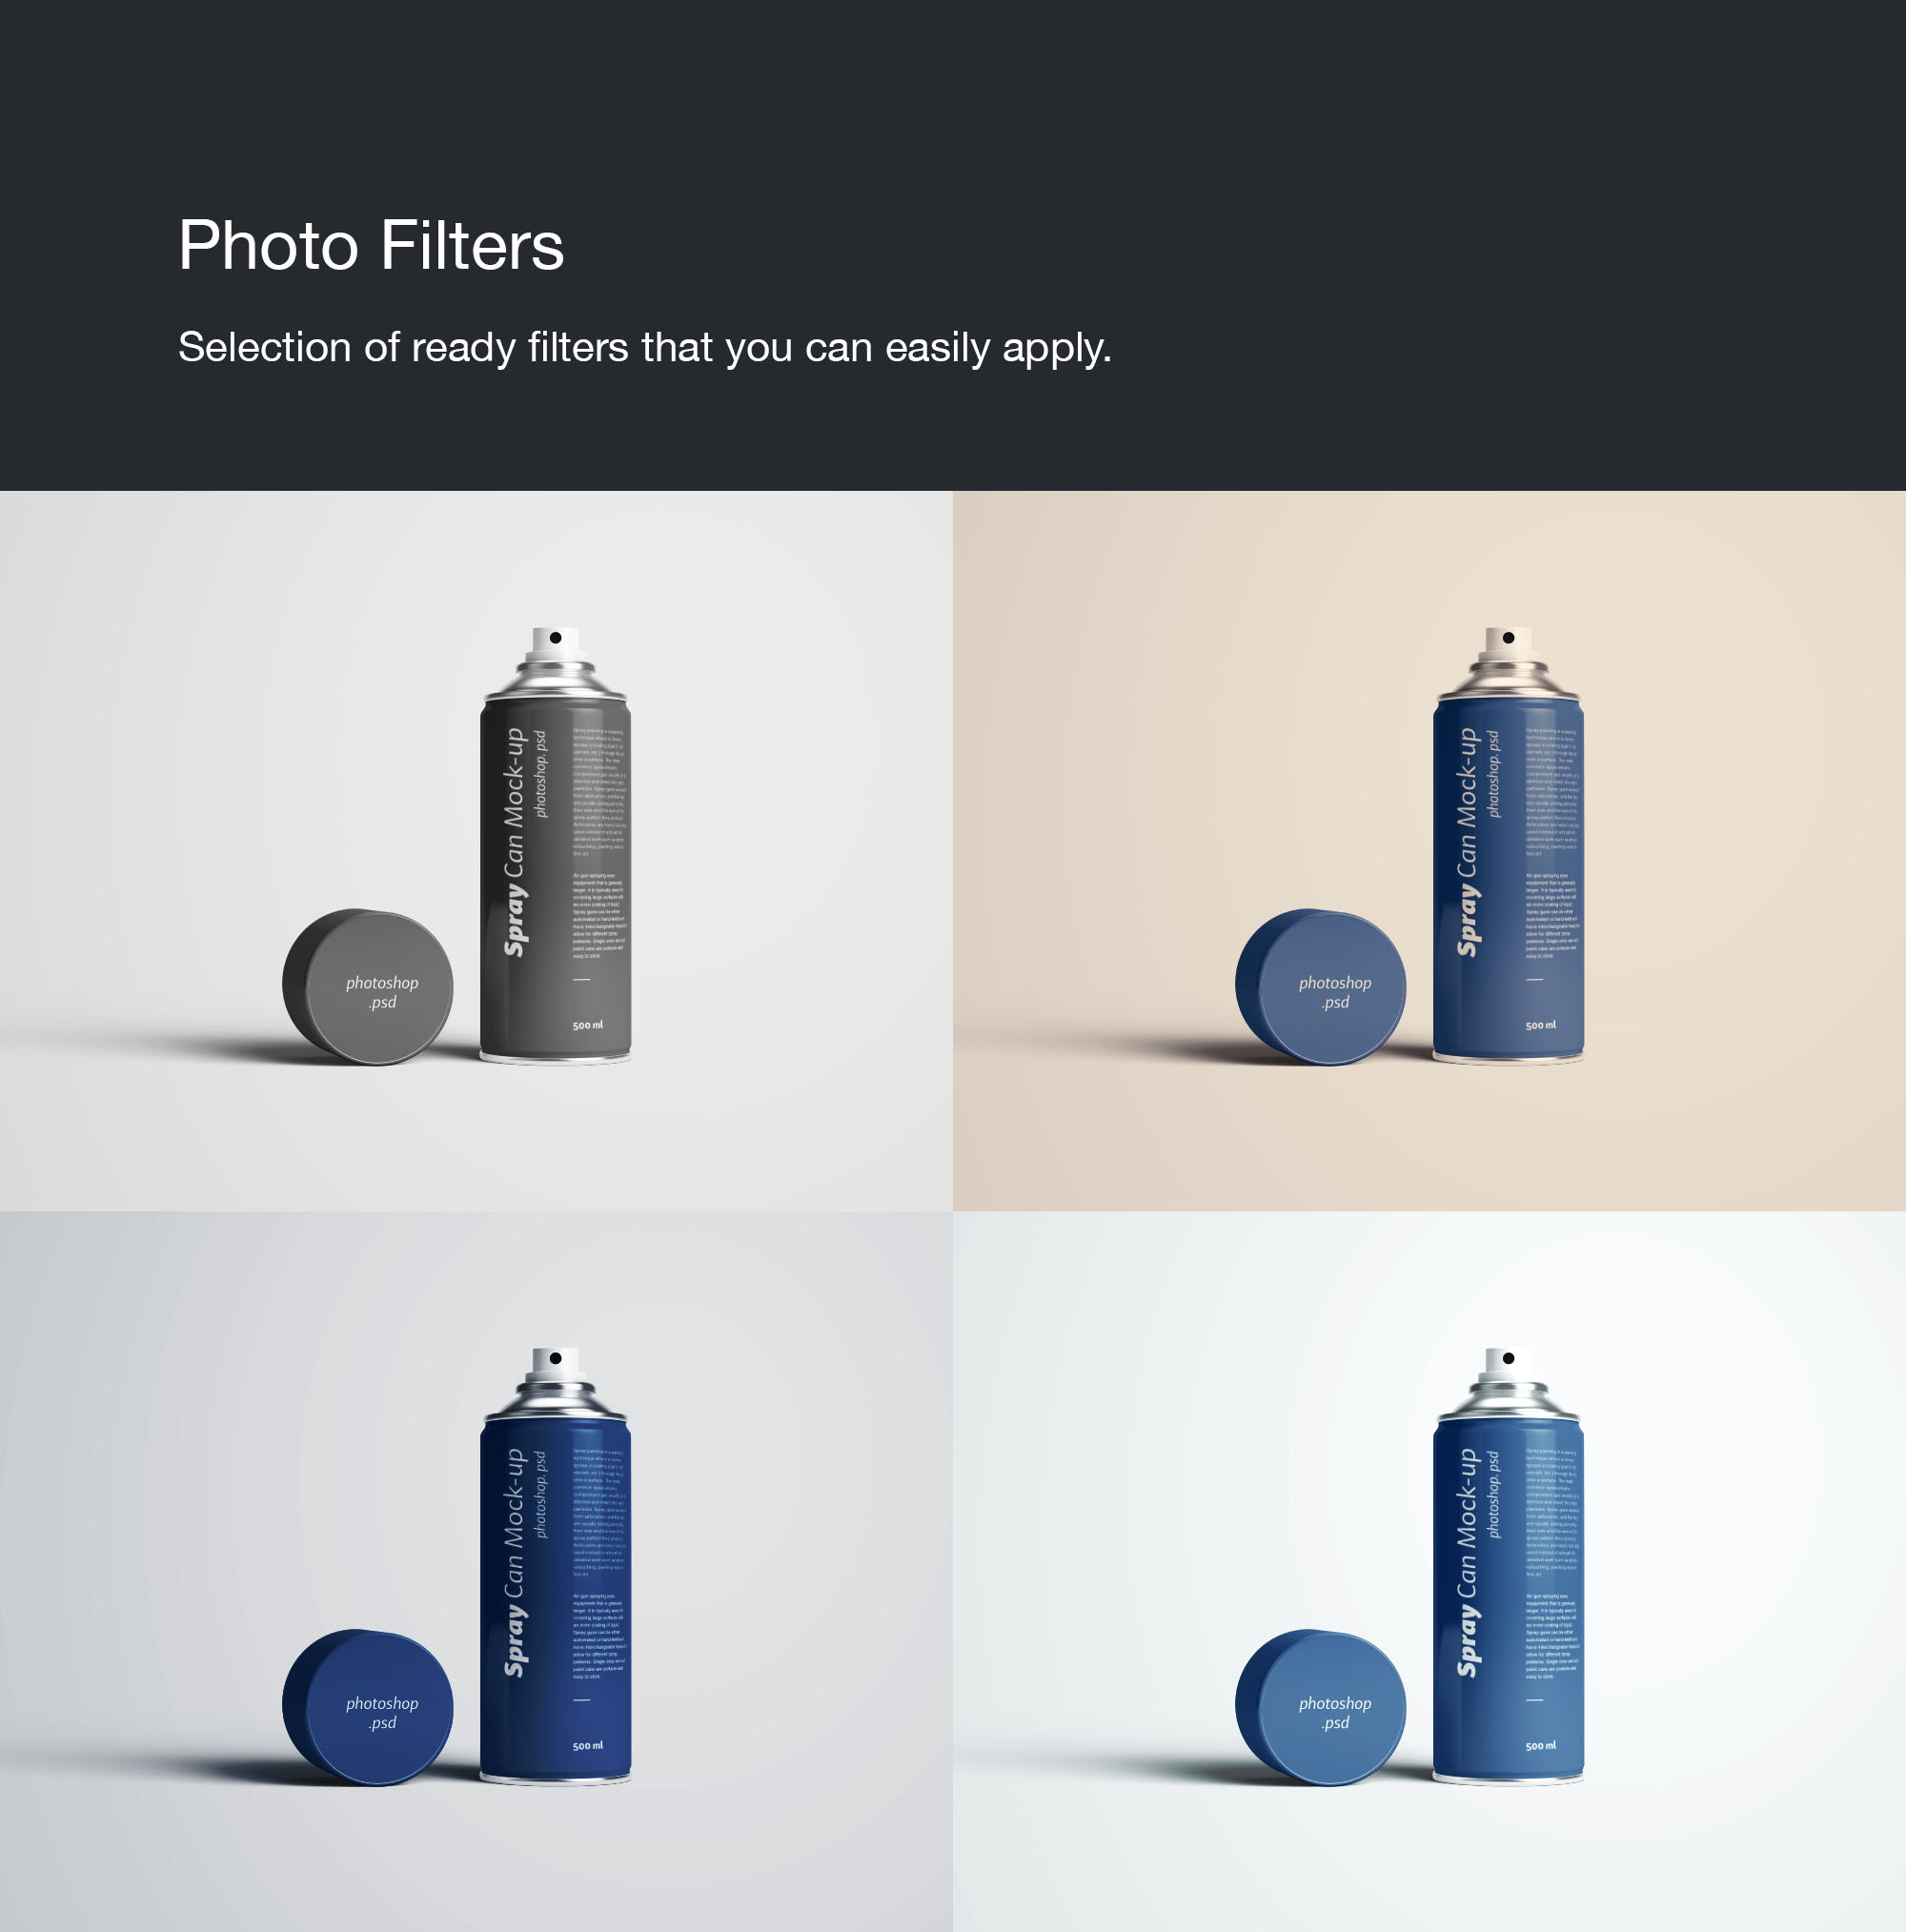 喷雾瓶喷雾罐外观设计样机PSD模板 Spray Can Mockup Photoshop PSD插图(9)